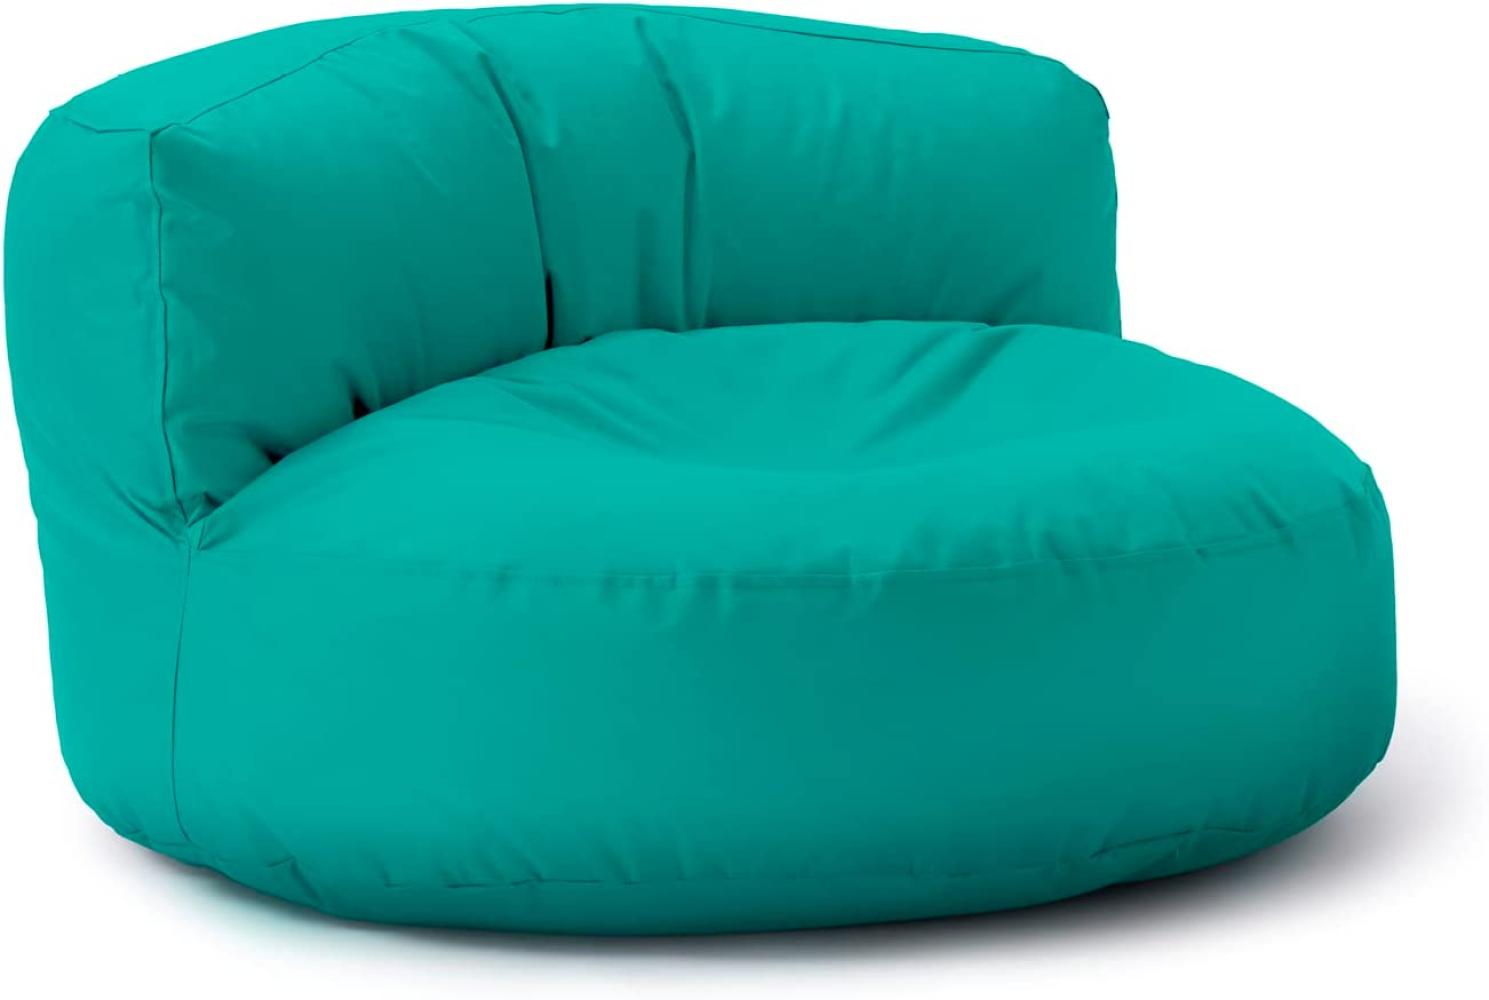 Lumaland Outdoor Sitzsack-Lounge, Rundes Sitzsack-Sofa für draußen, 320l Füllung, 90 x 50 cm, Türkis Bild 1